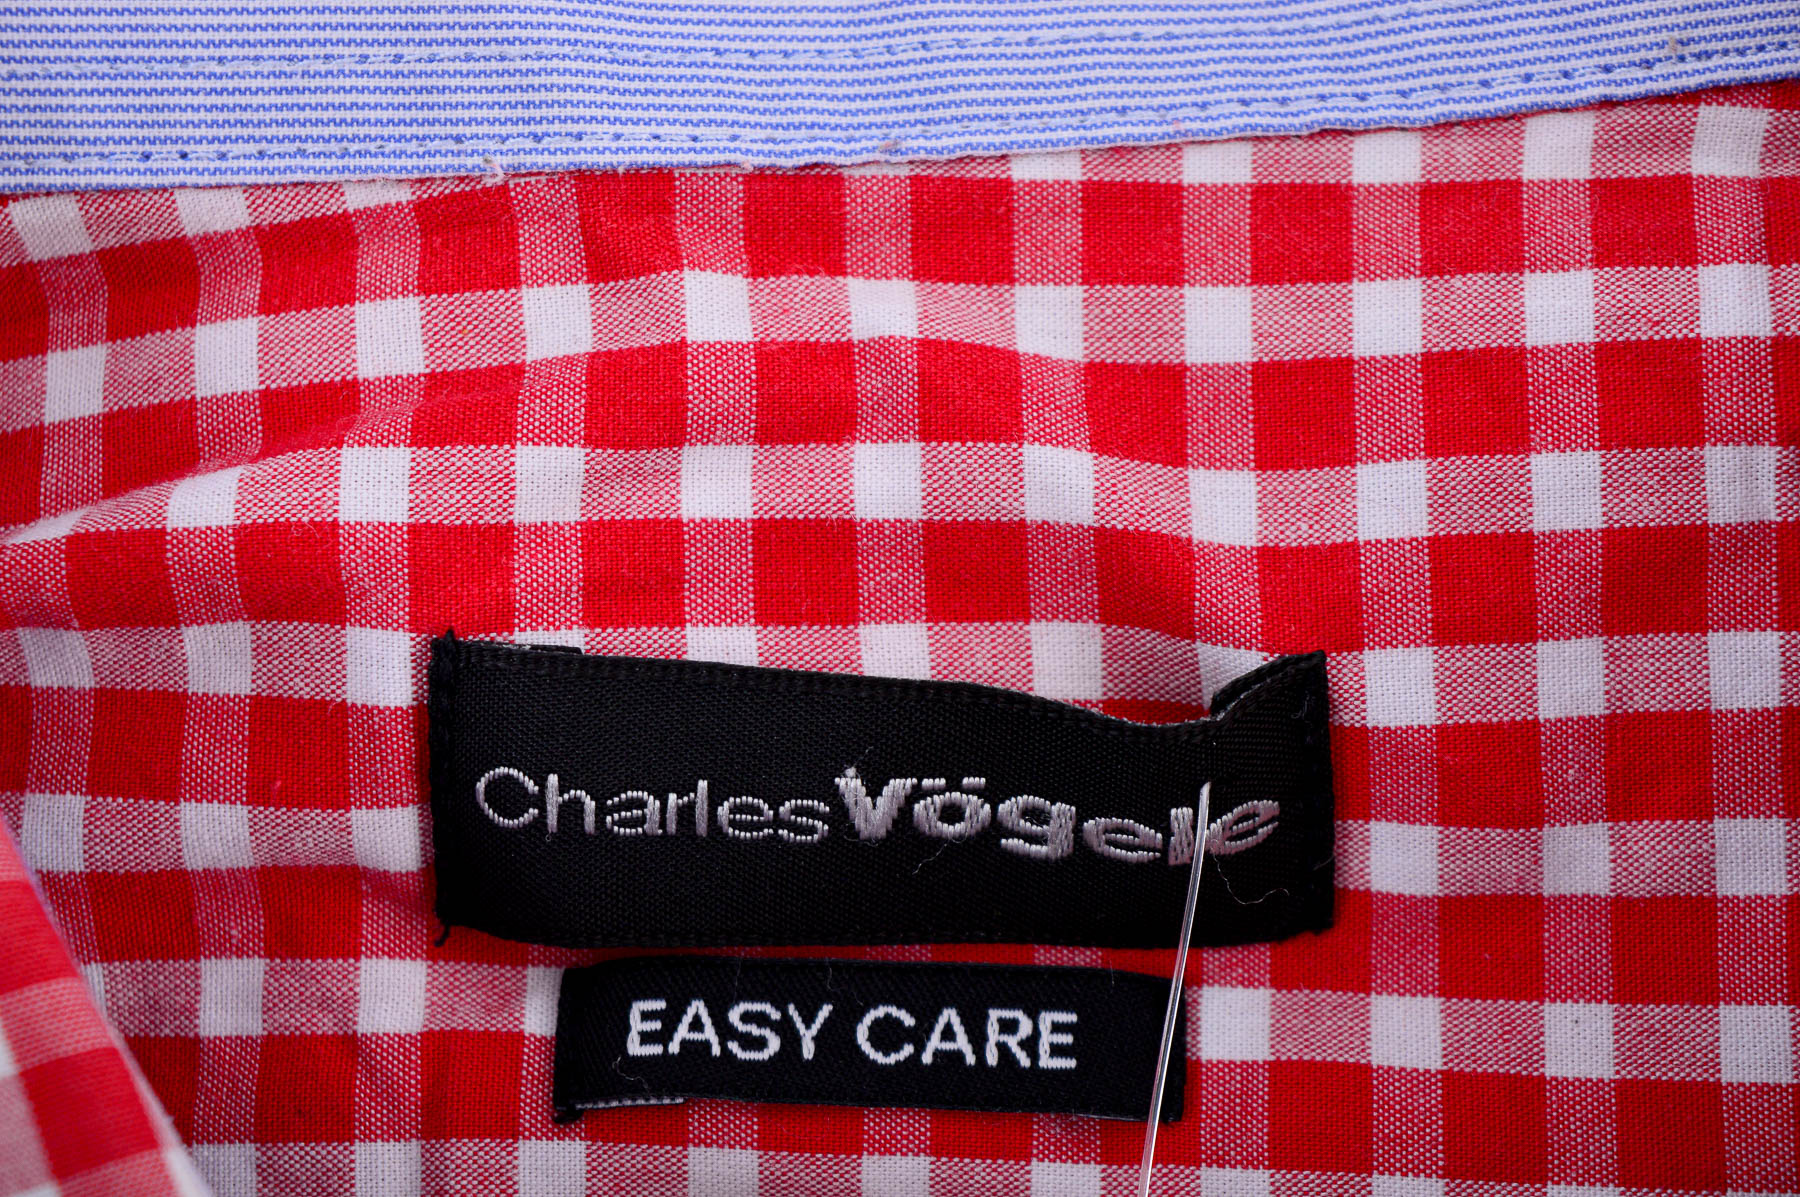 Ανδρικό πουκάμισο - Charles Vogele - 2